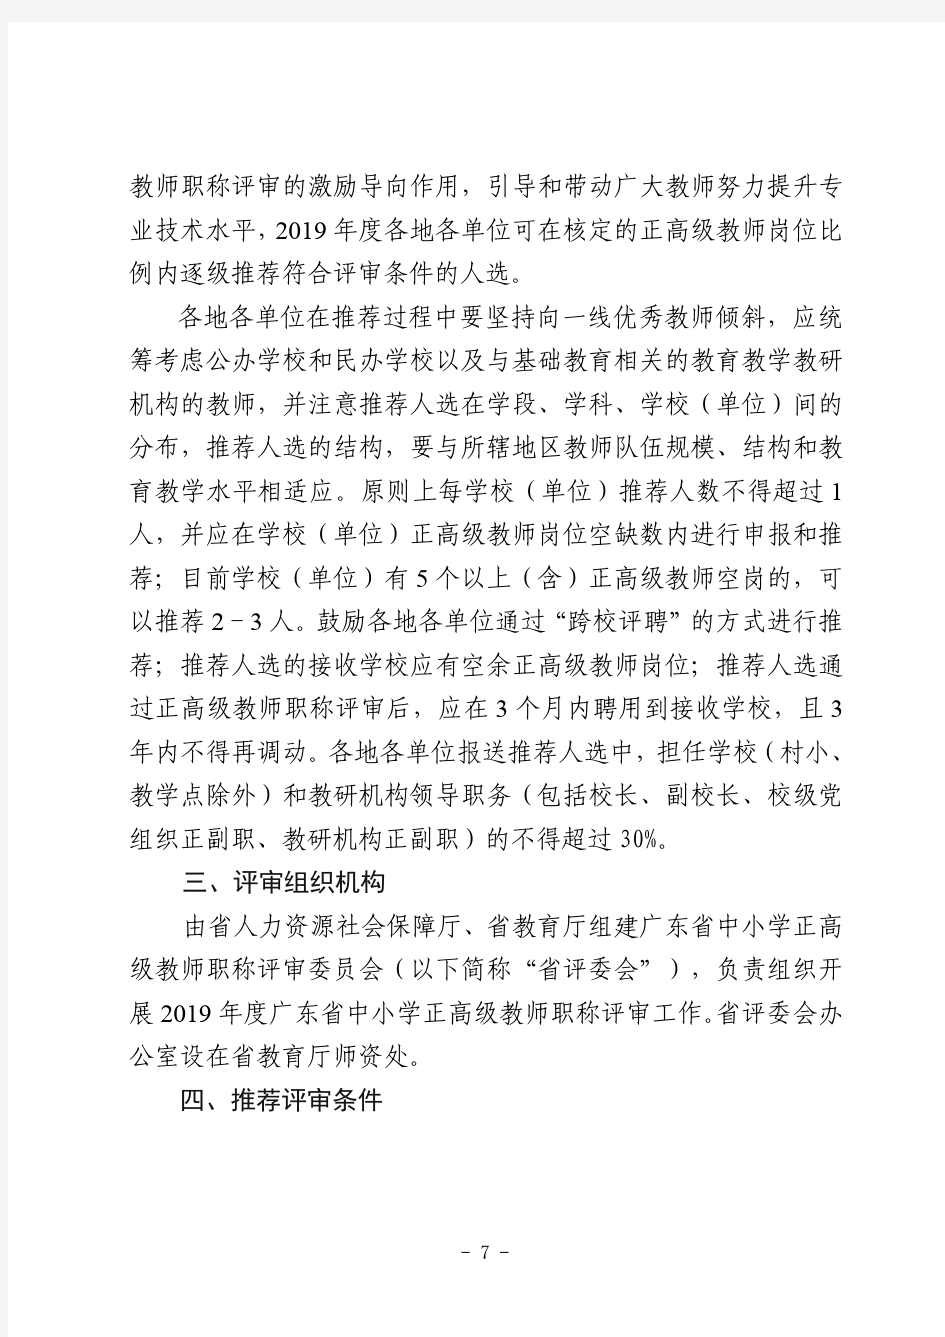 2019年度广东省中小学正高级教师职称评审工作方案